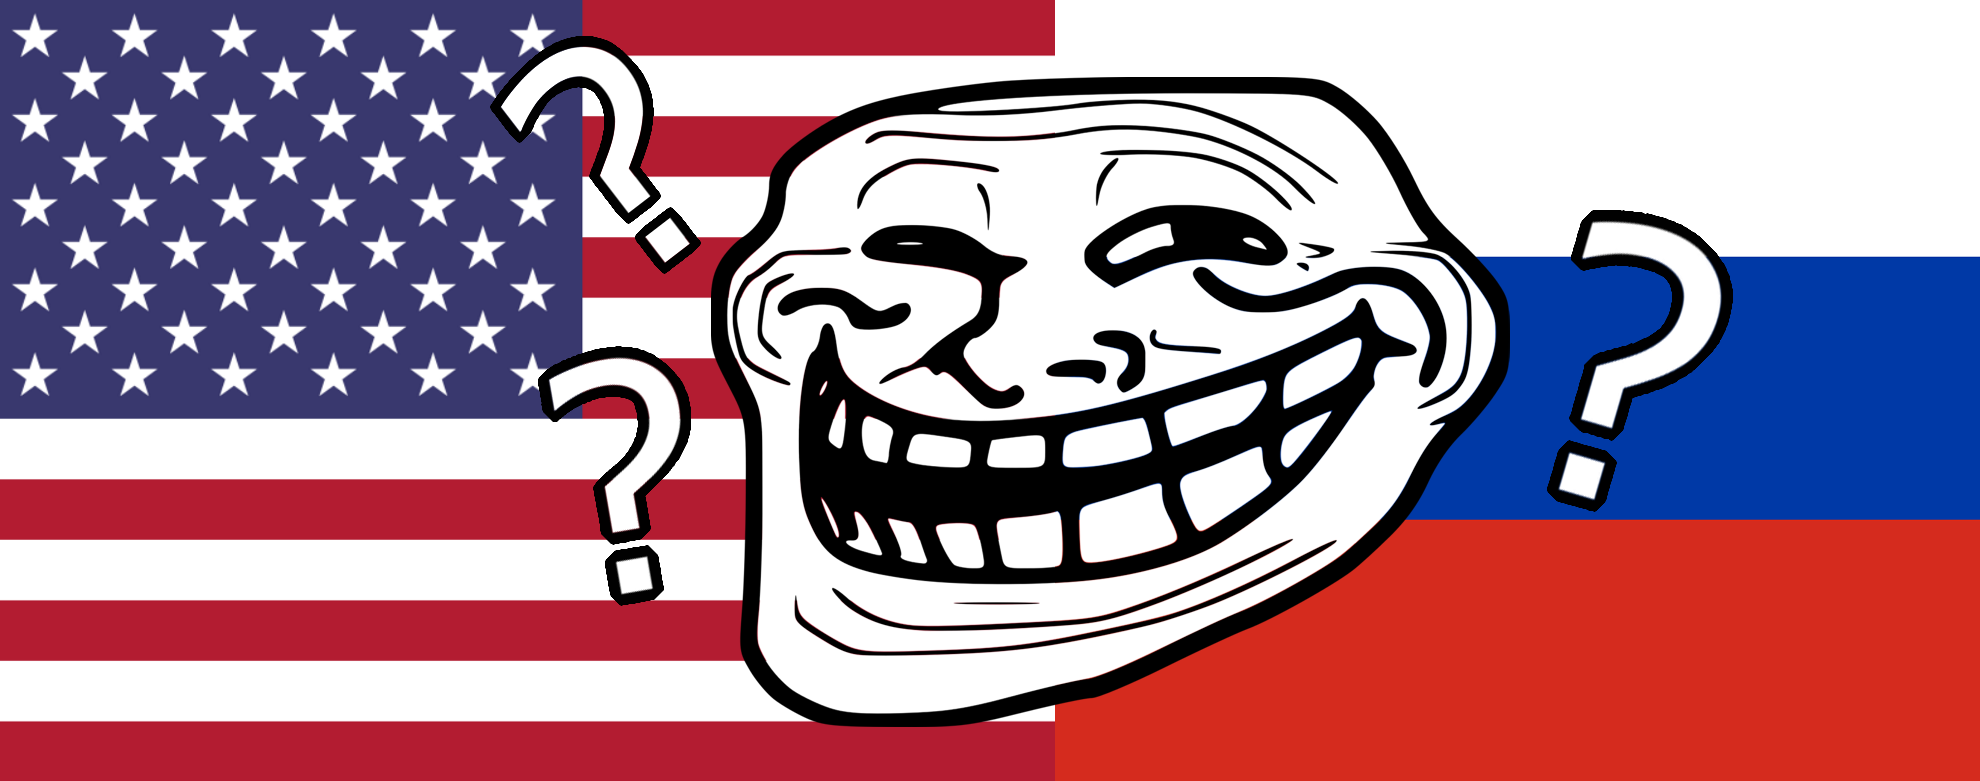 TrollTracker: How To Spot Russian Trolls, by @DFRLab